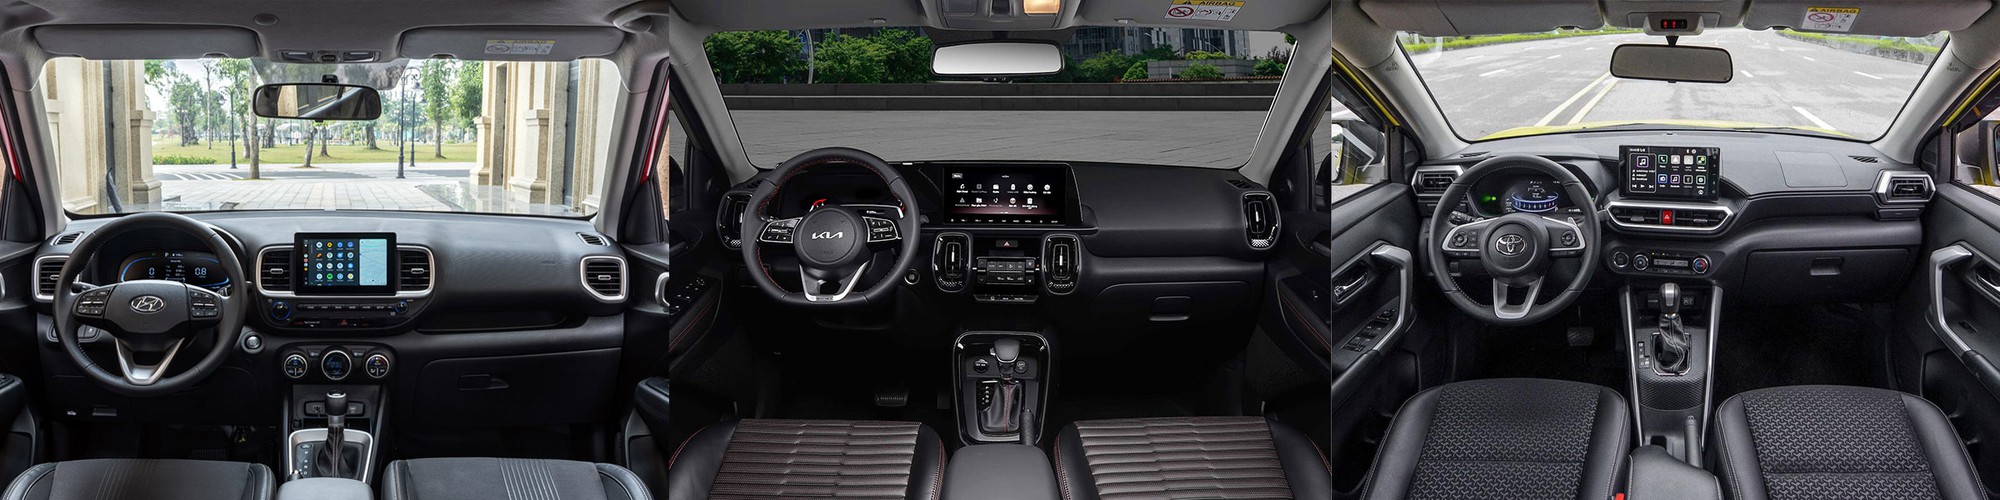 Bộ ba A-SUV tại Việt Nam: Hyundai Venue, KIA Sonet và Toyota Raize, mẫu xe nào cho bạn? - Ảnh 20.